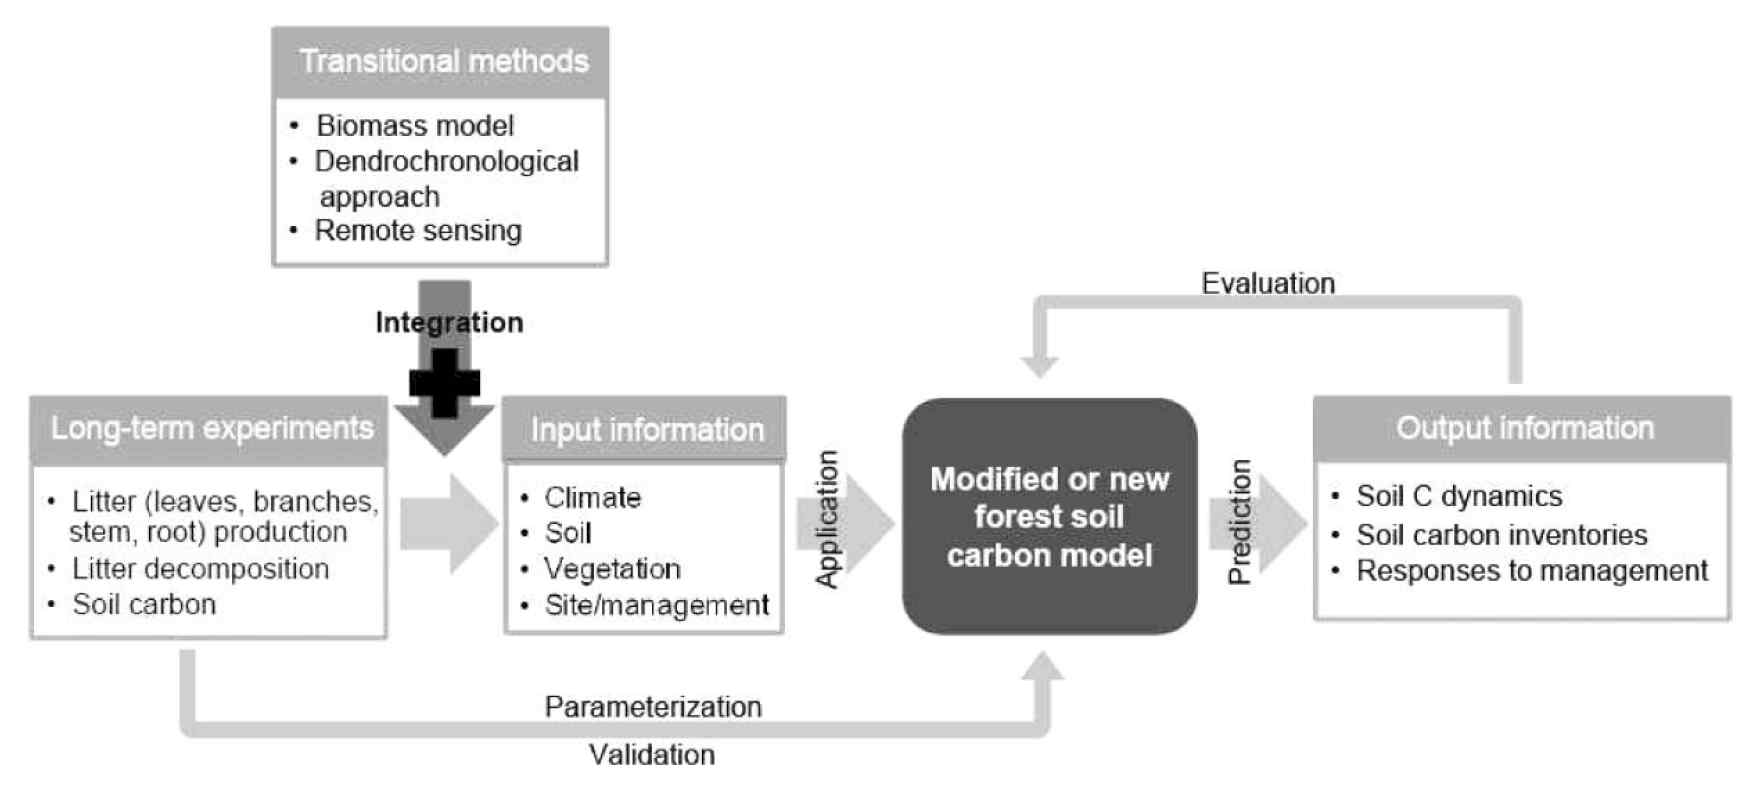 산림탄소모델 개발 체계(Lee et al., 2010)